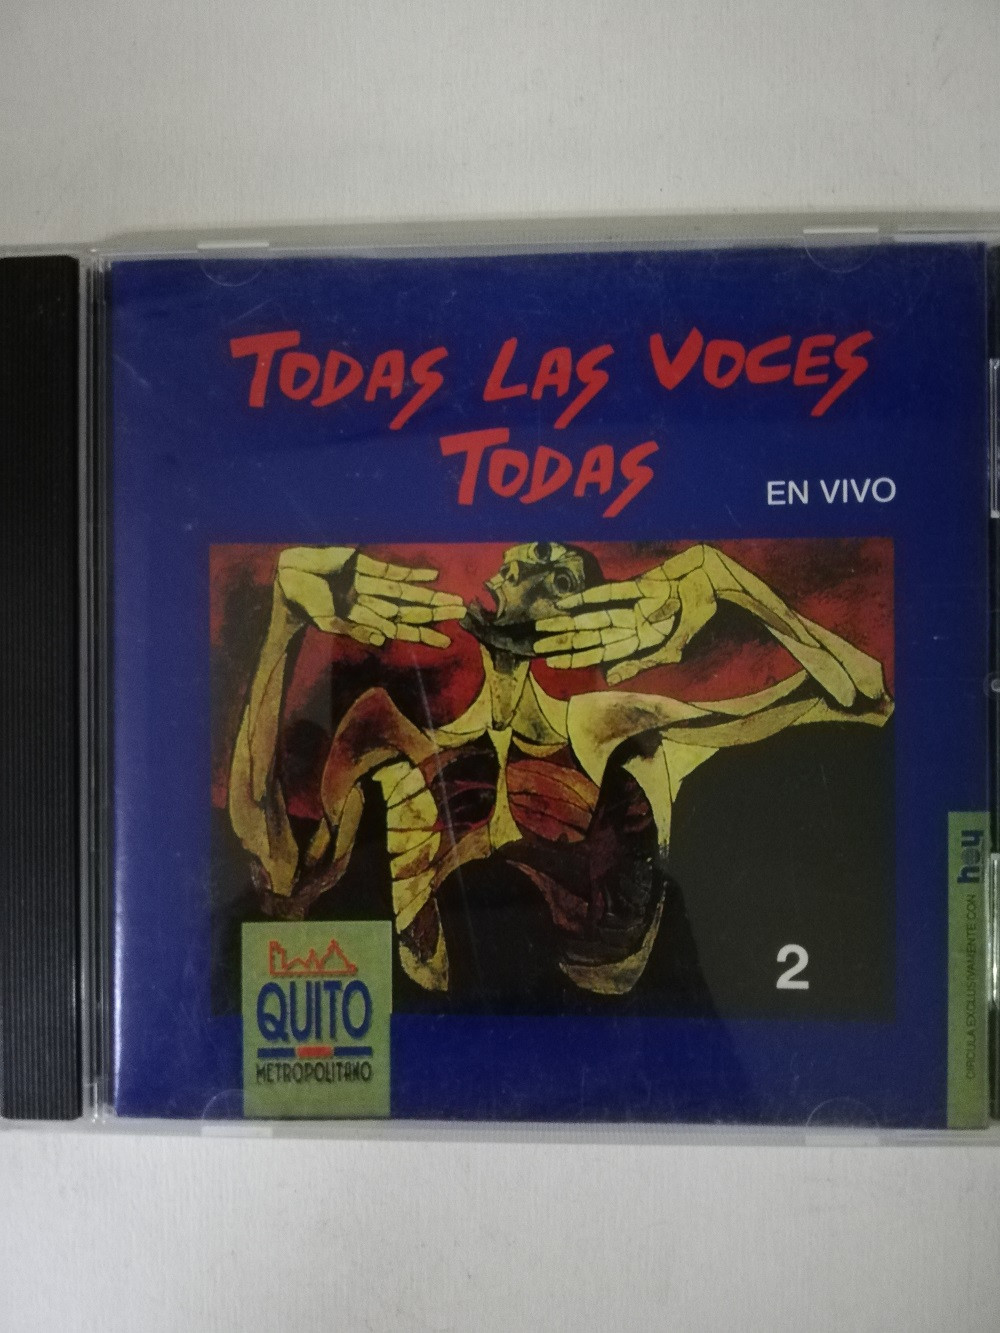 Imagen CD TODAS LAS VOCES TODAS - TODAS LAS VOCES TODAS VOL. 2 1